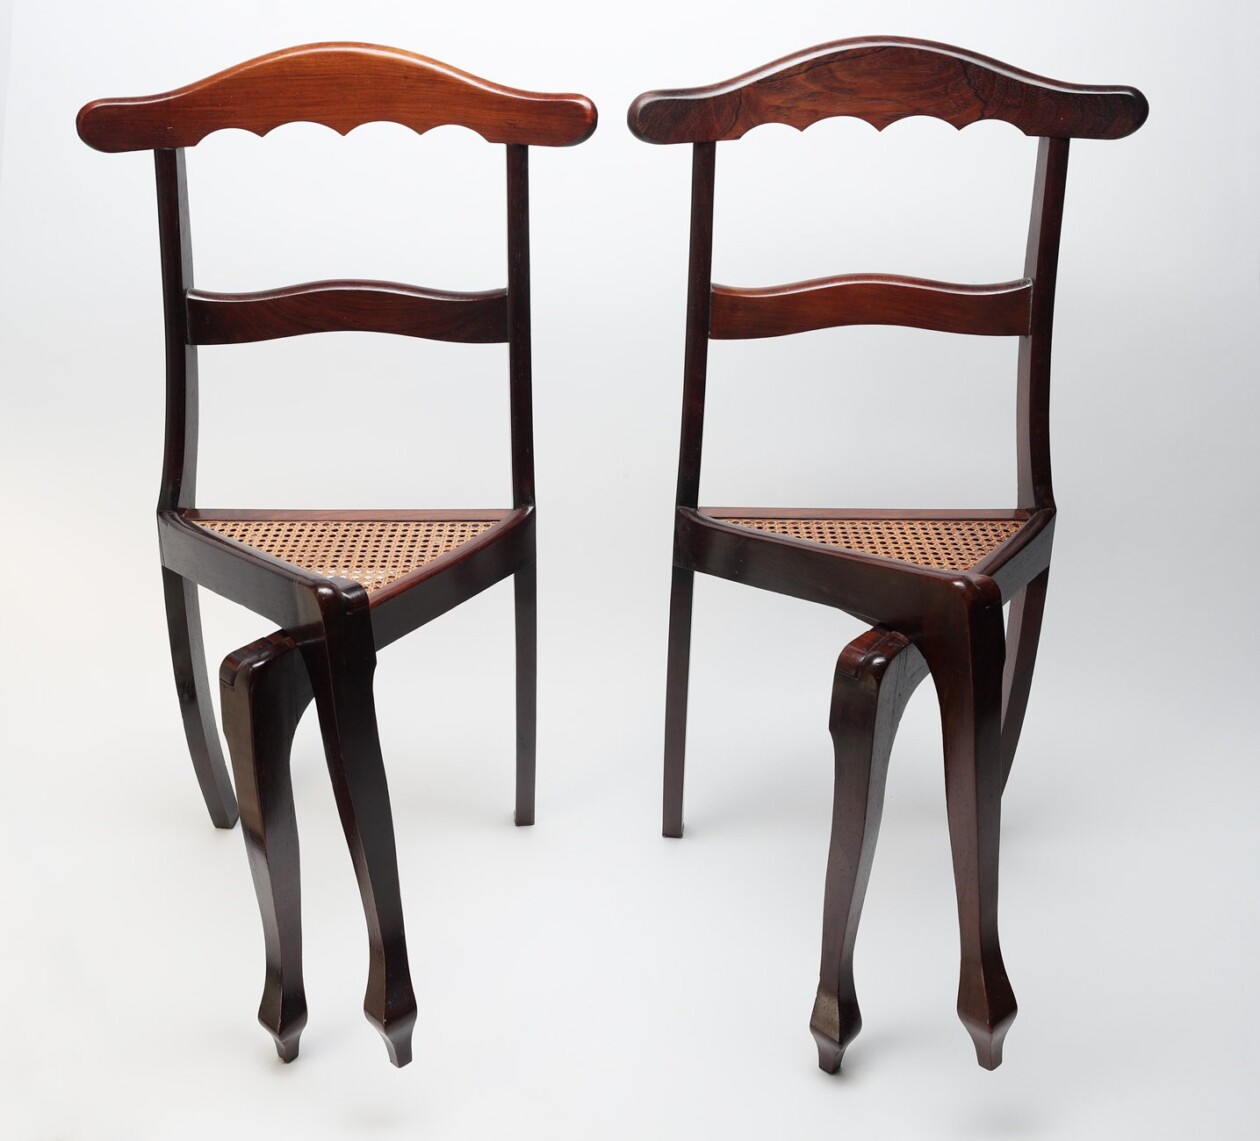 Cadeiras De Pernas Cruzadas (cross Legged Chair) By Luiz Philippe